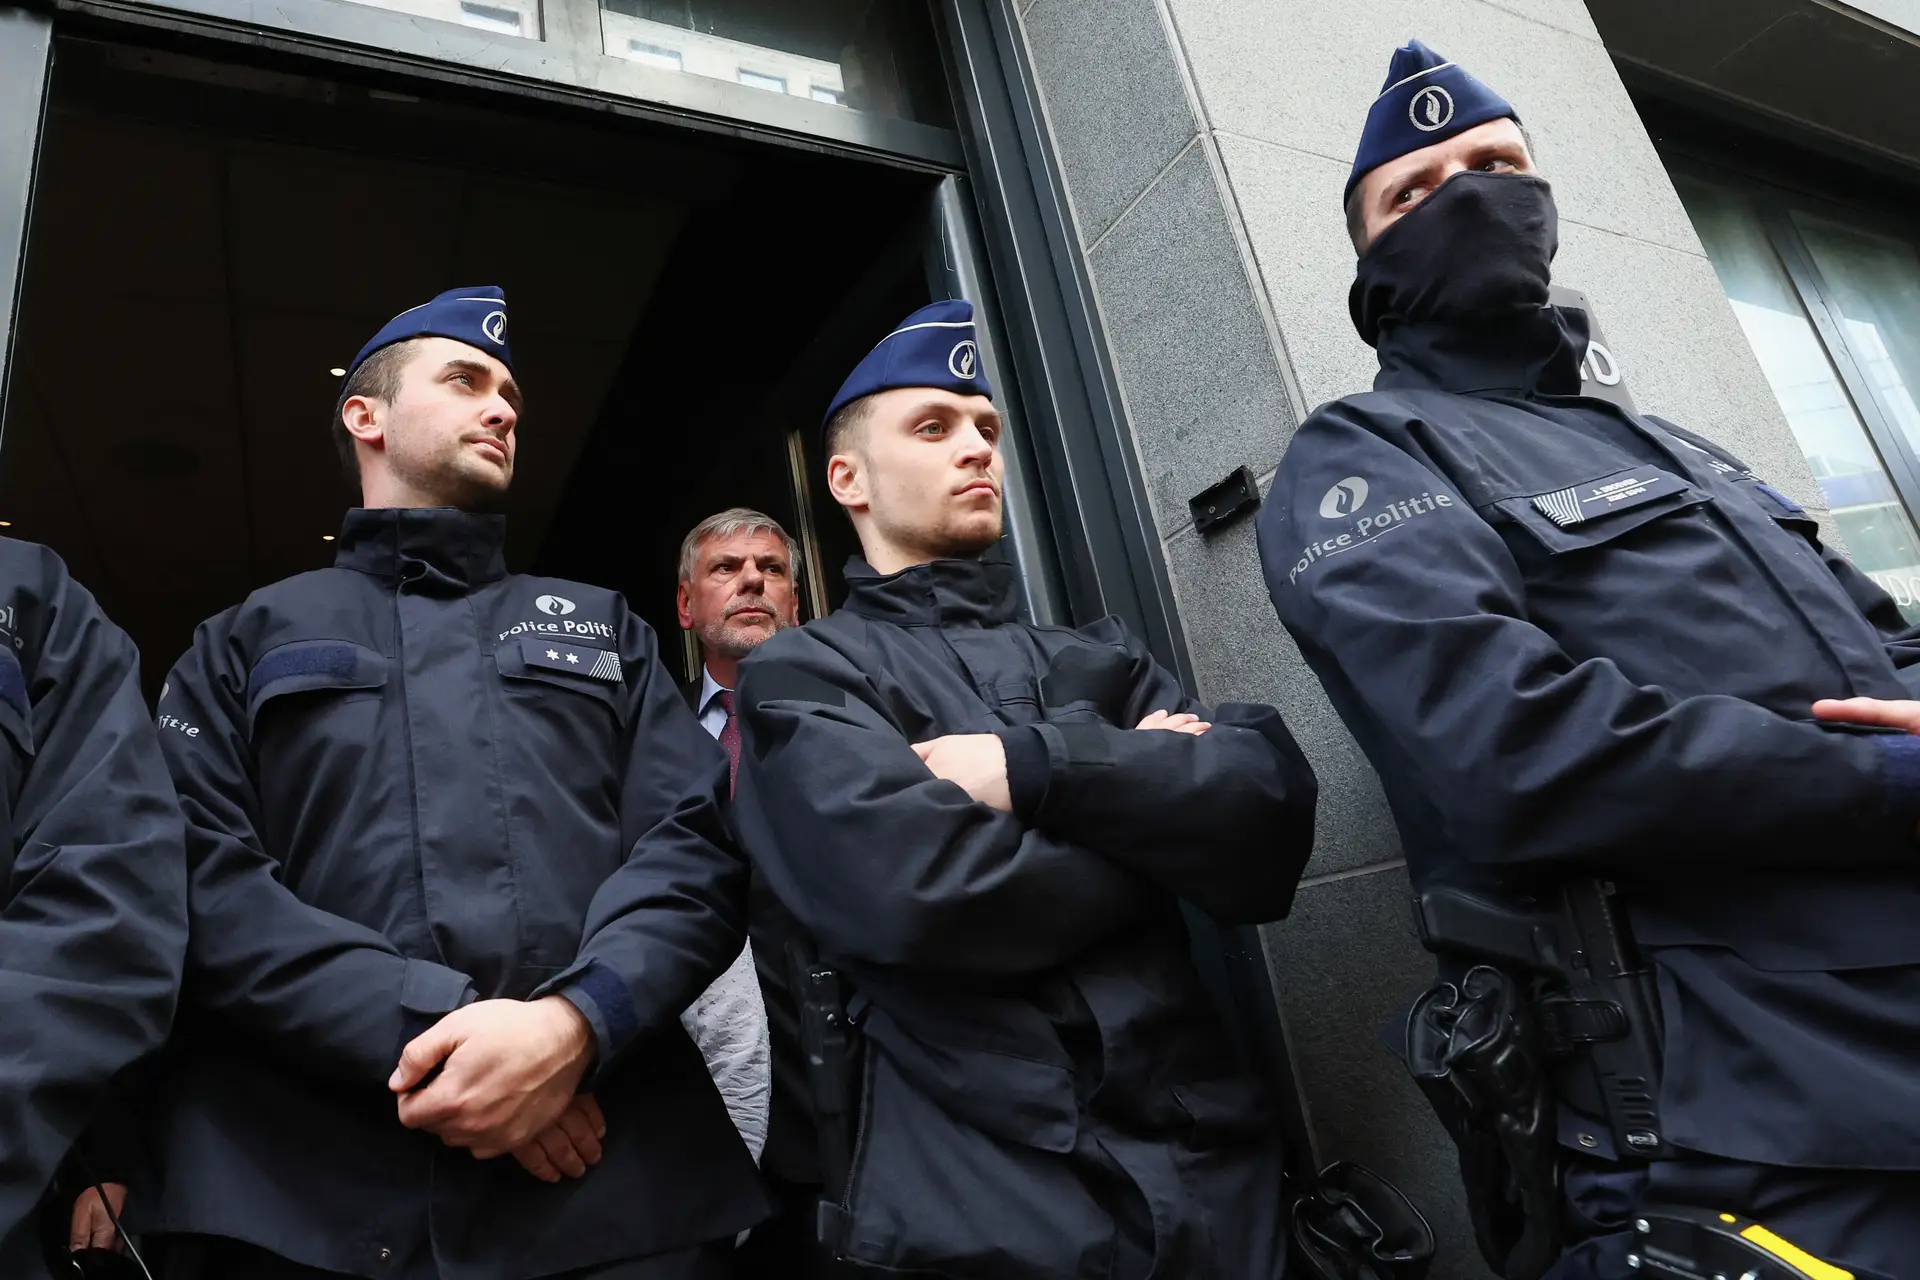 Autarca manda encerrar conferência da extrema-direita em Bruxelas